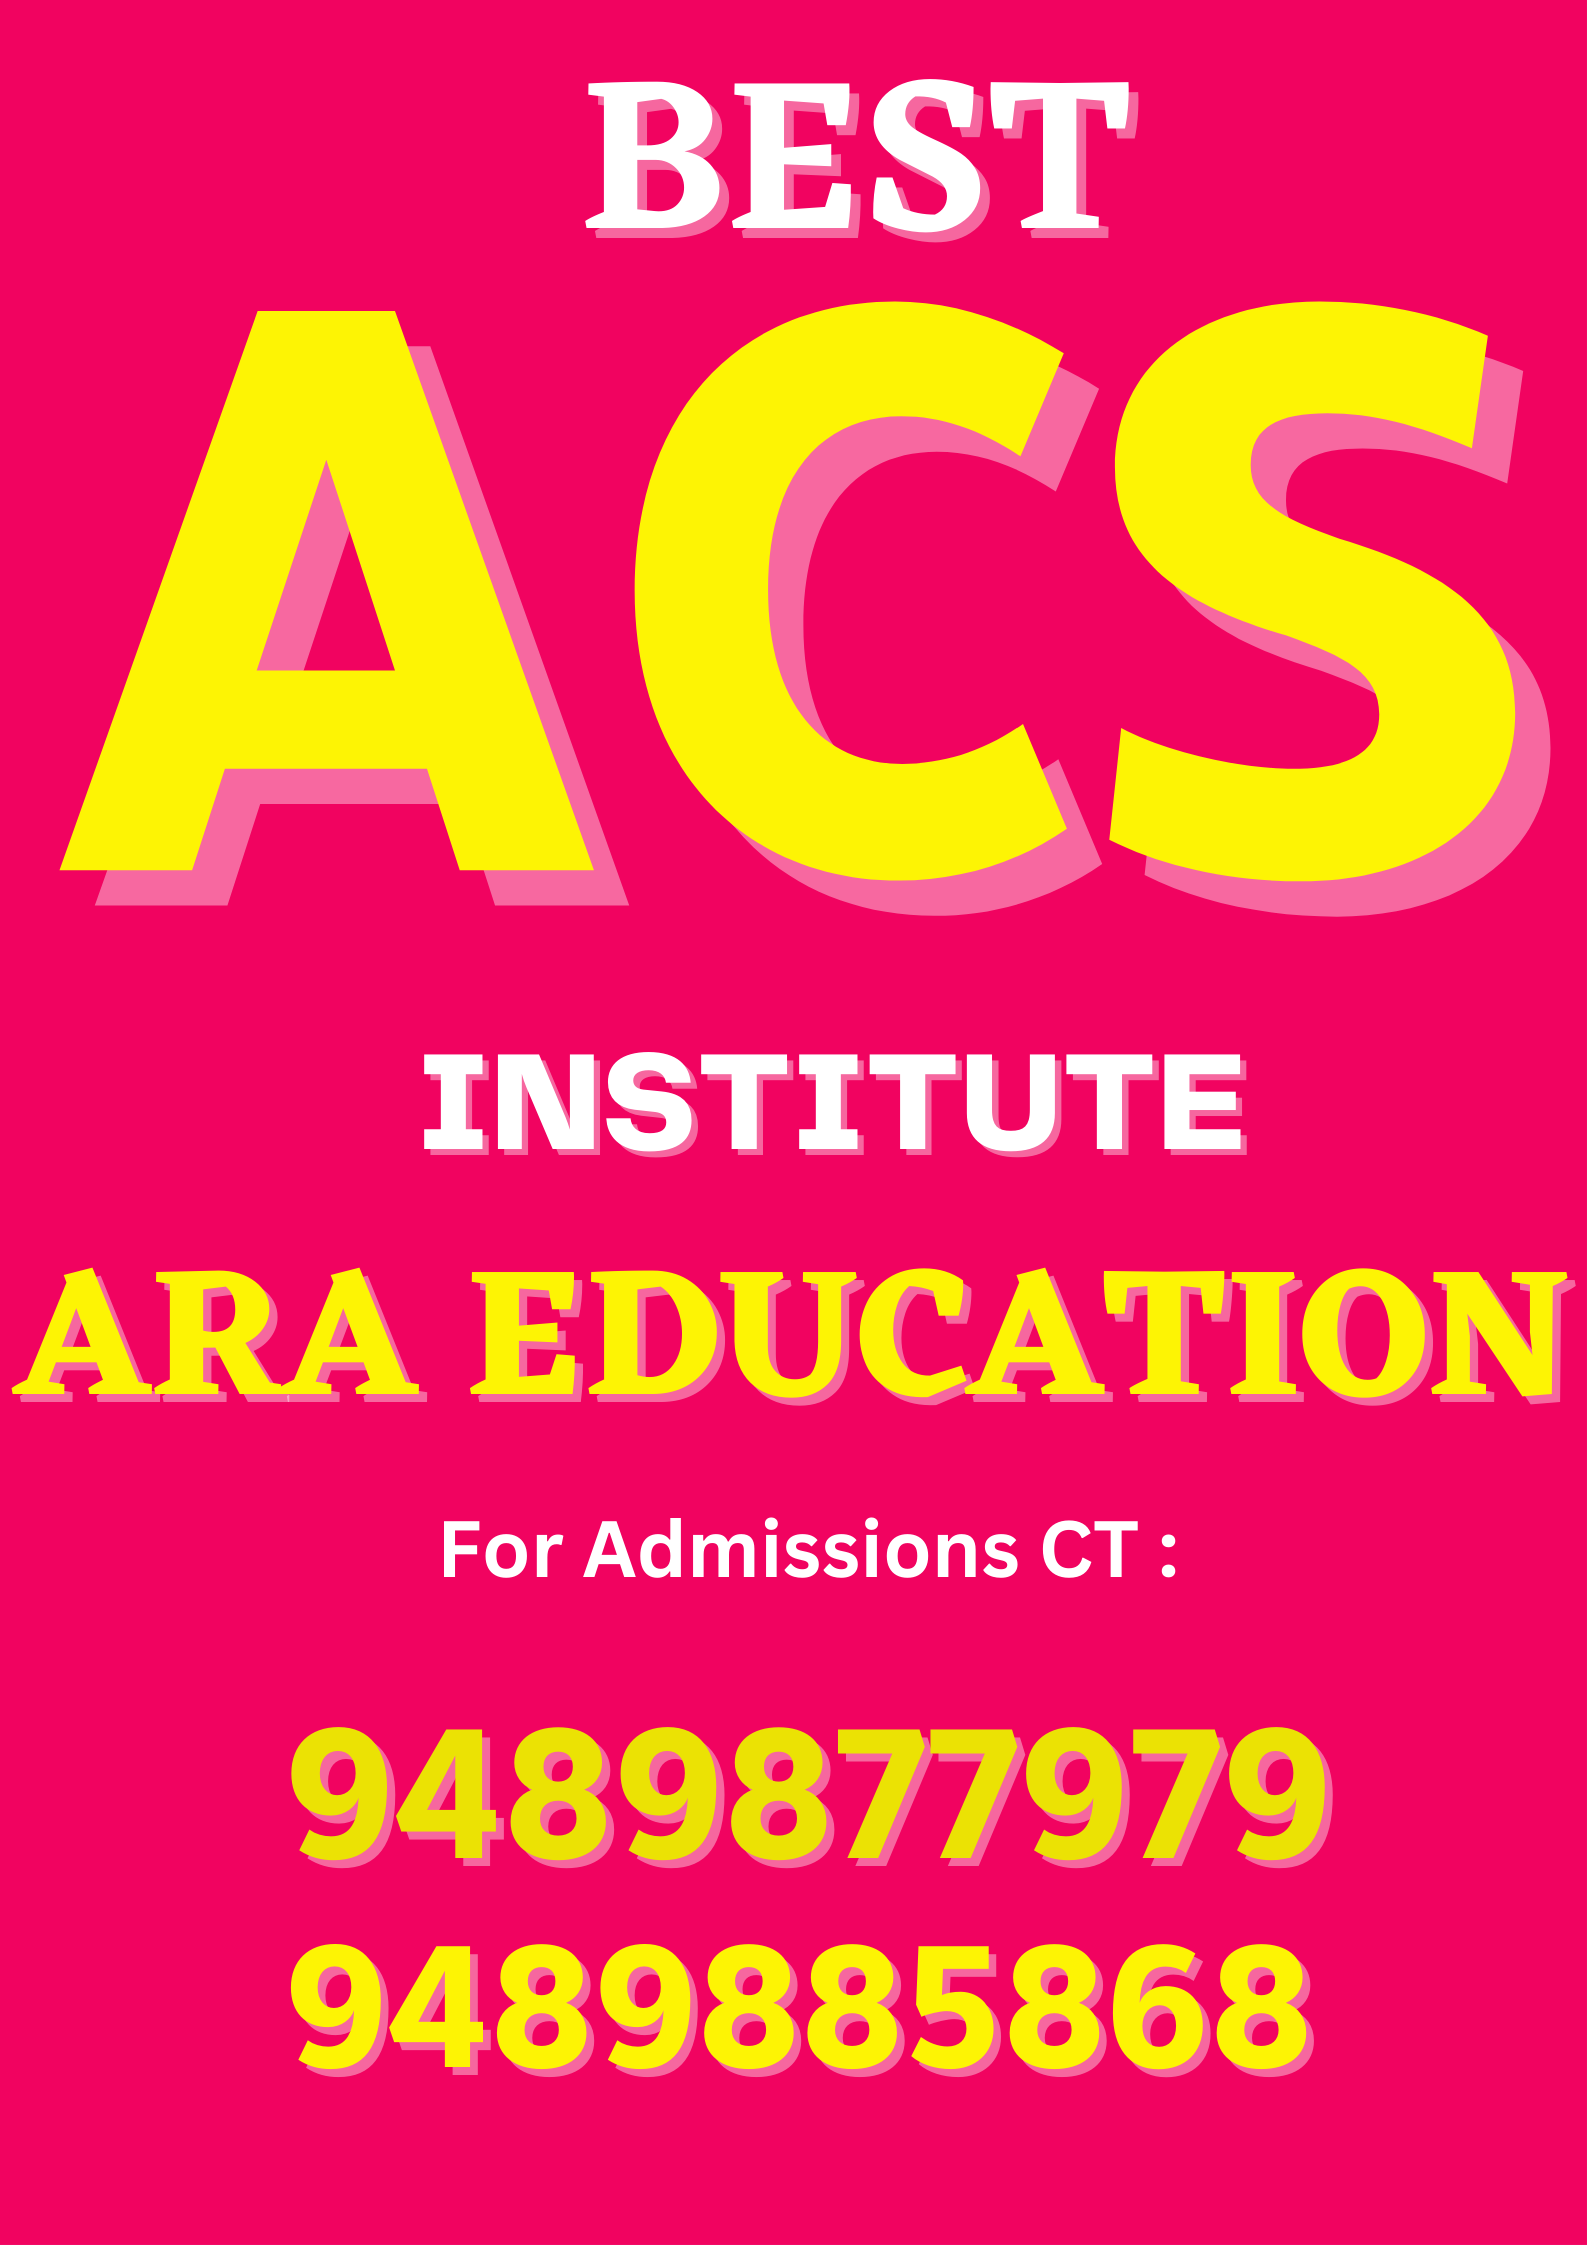 Best ACS Institute